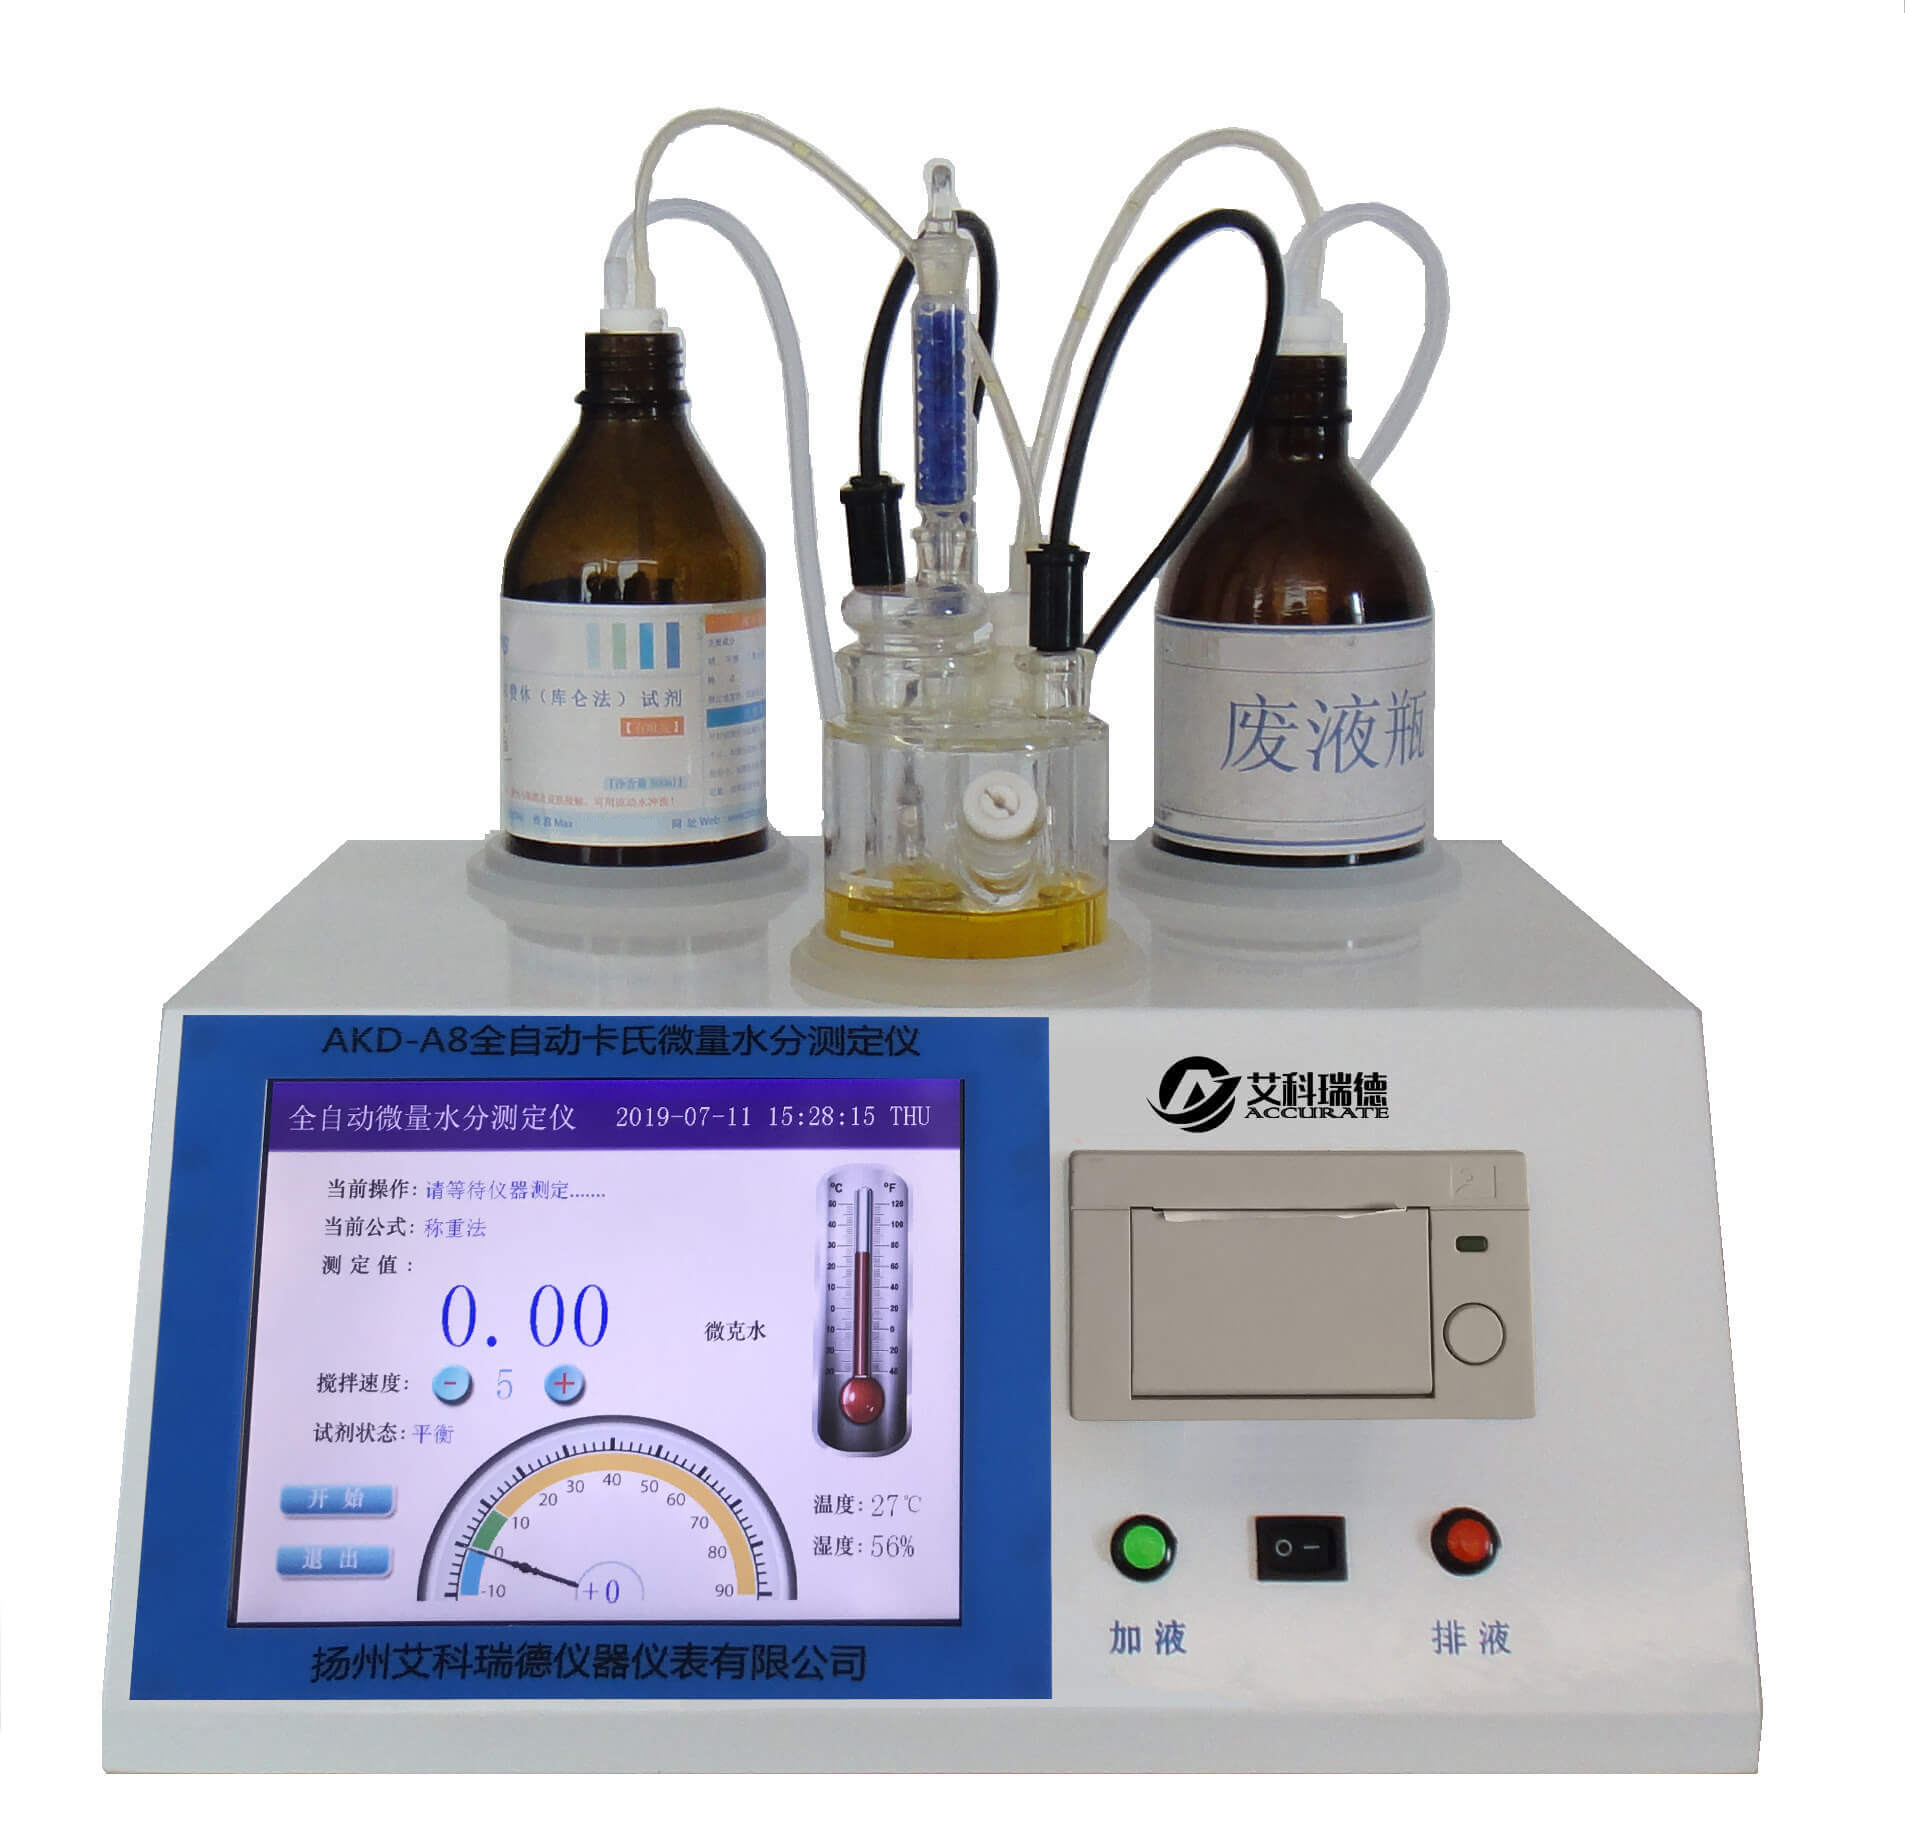 醇類水分測定儀